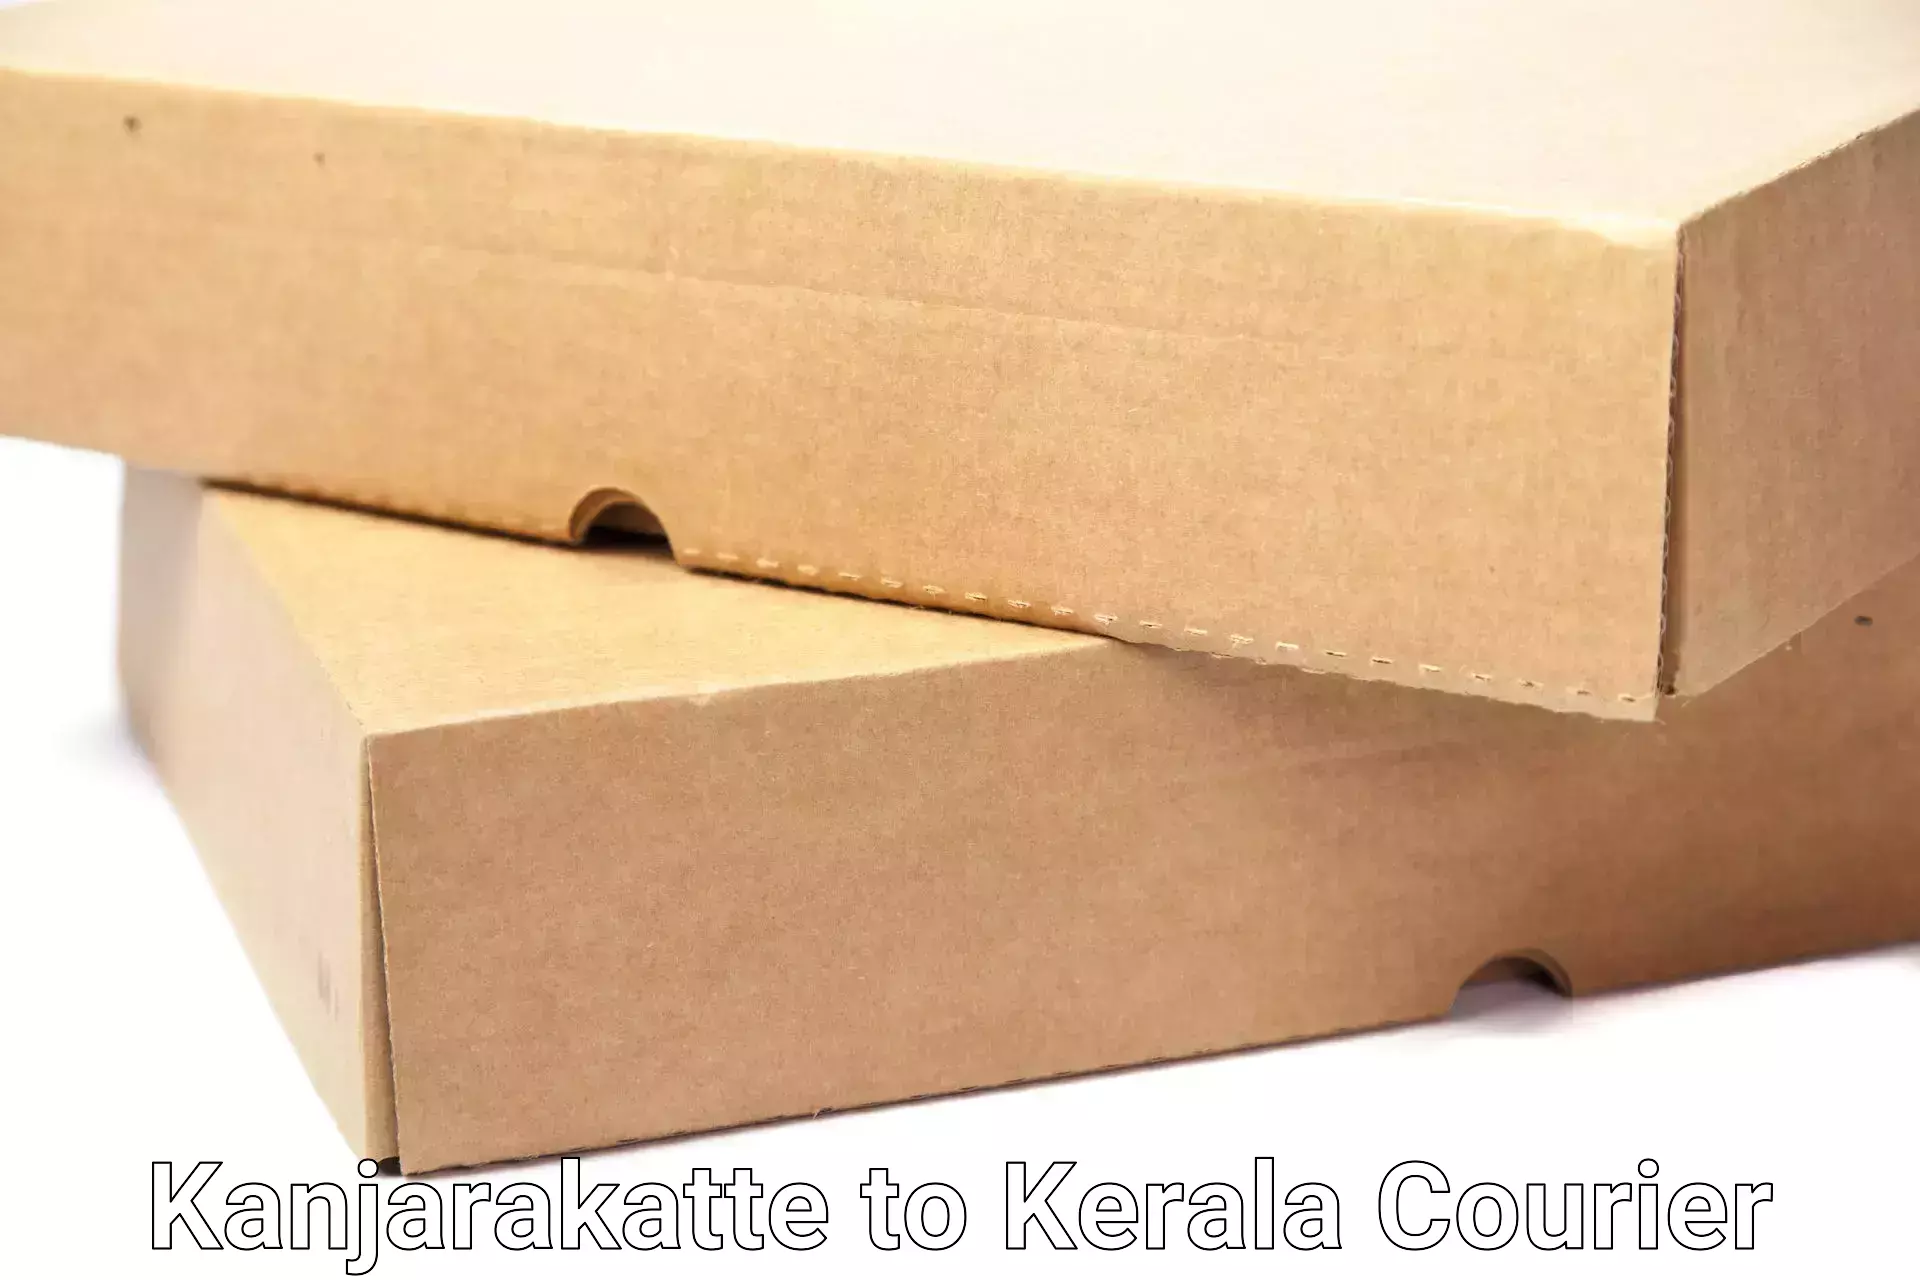 Safe household movers Kanjarakatte to Kerala